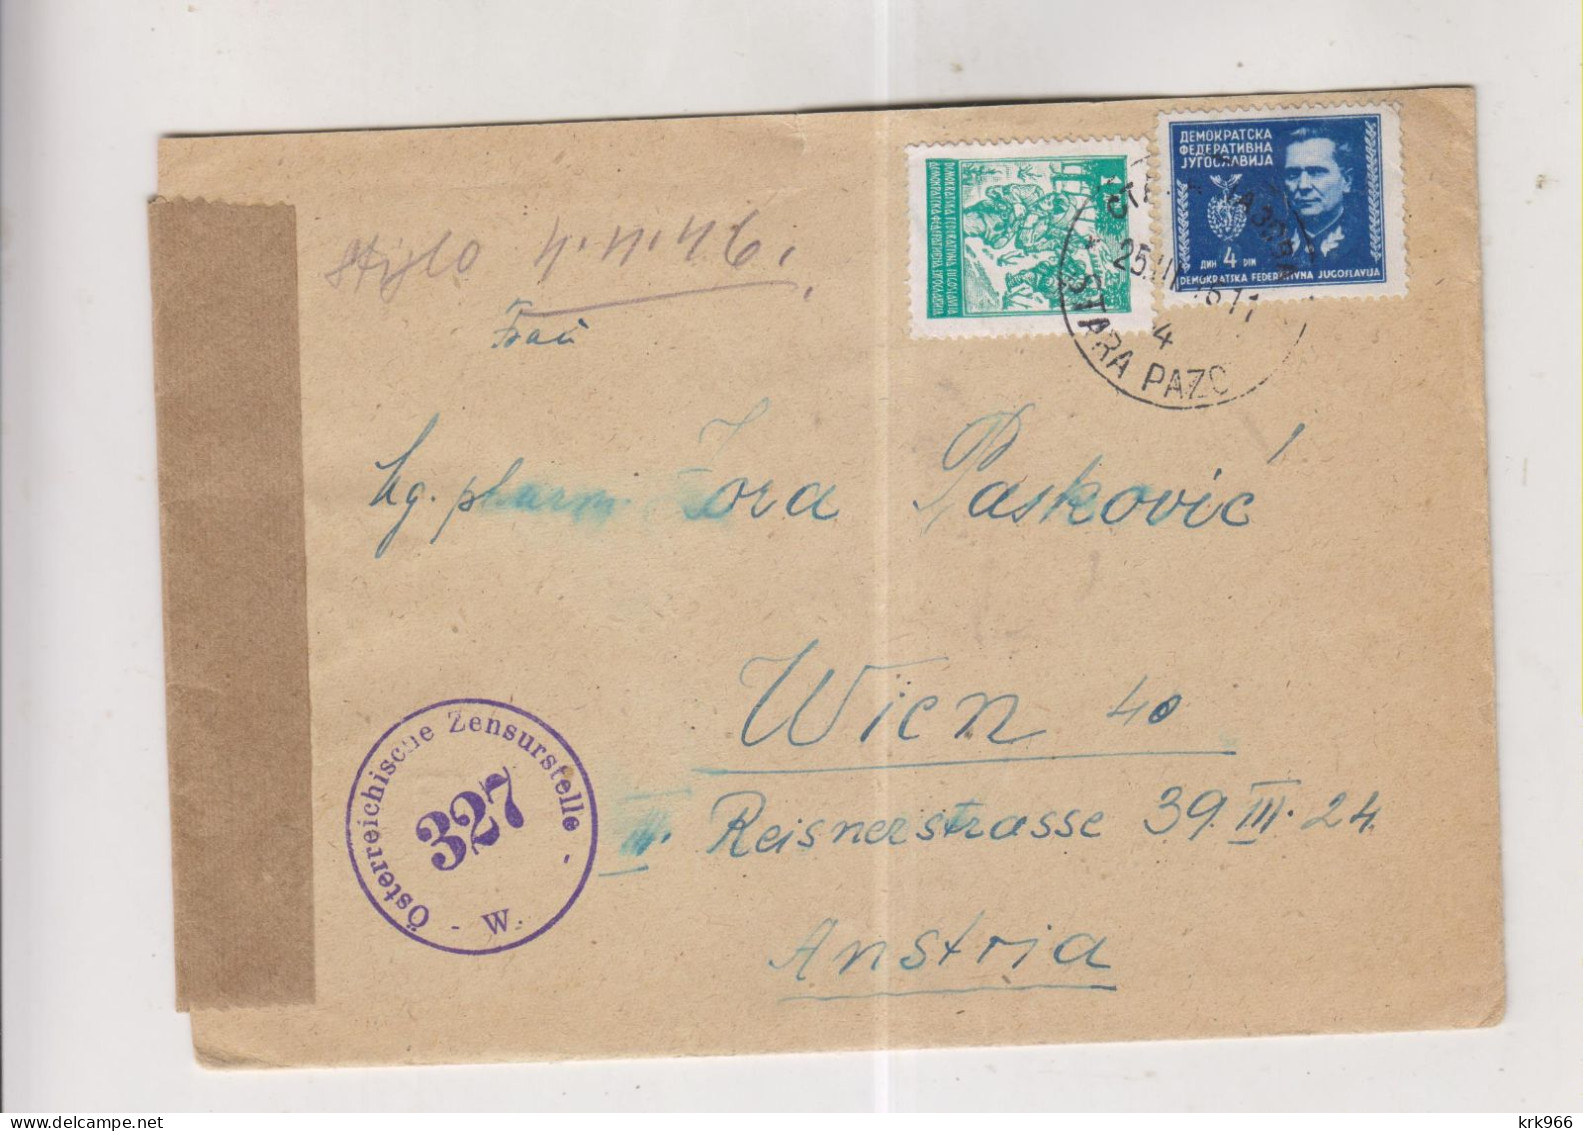 YUGOSLAVIA,1946 STARA PAZOVA  Censored  Cover To Austria - Briefe U. Dokumente